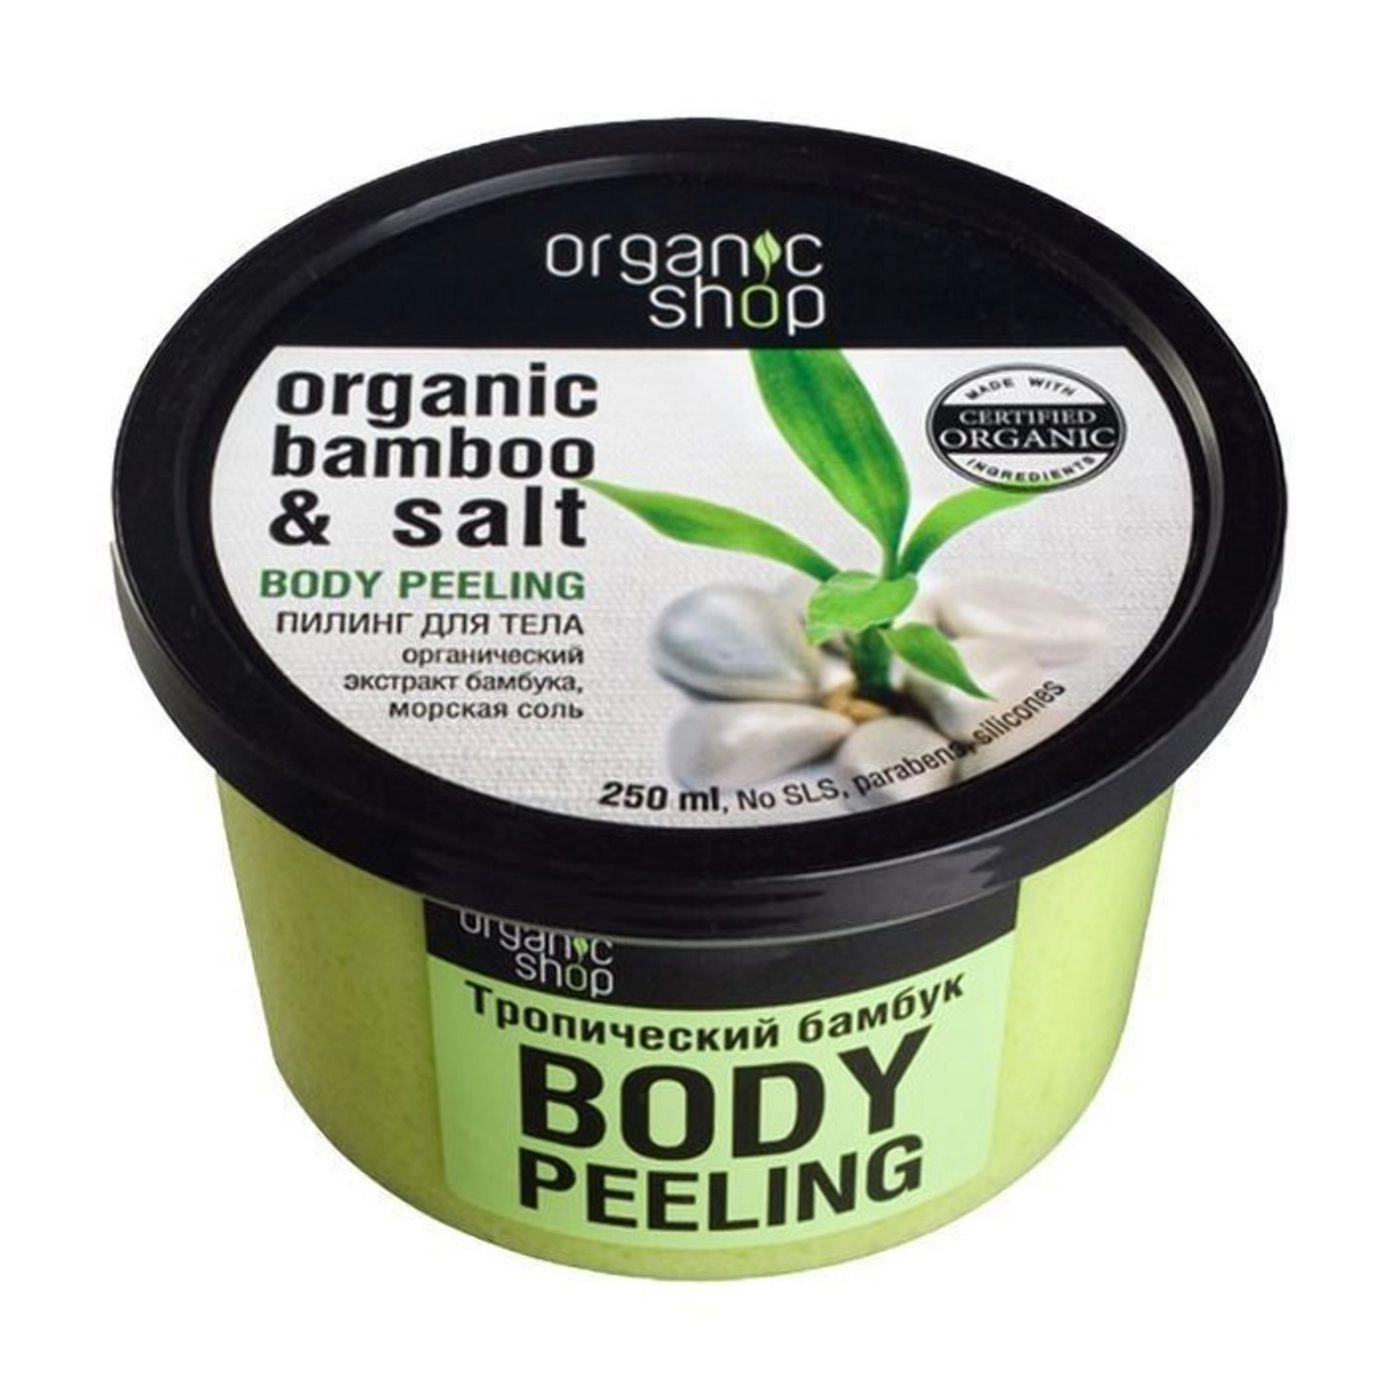 Organic Shop Пілінг для тіла Body Peeling Organic Bamboo Salt Тропічний бамбук, 250 мл - фото N1